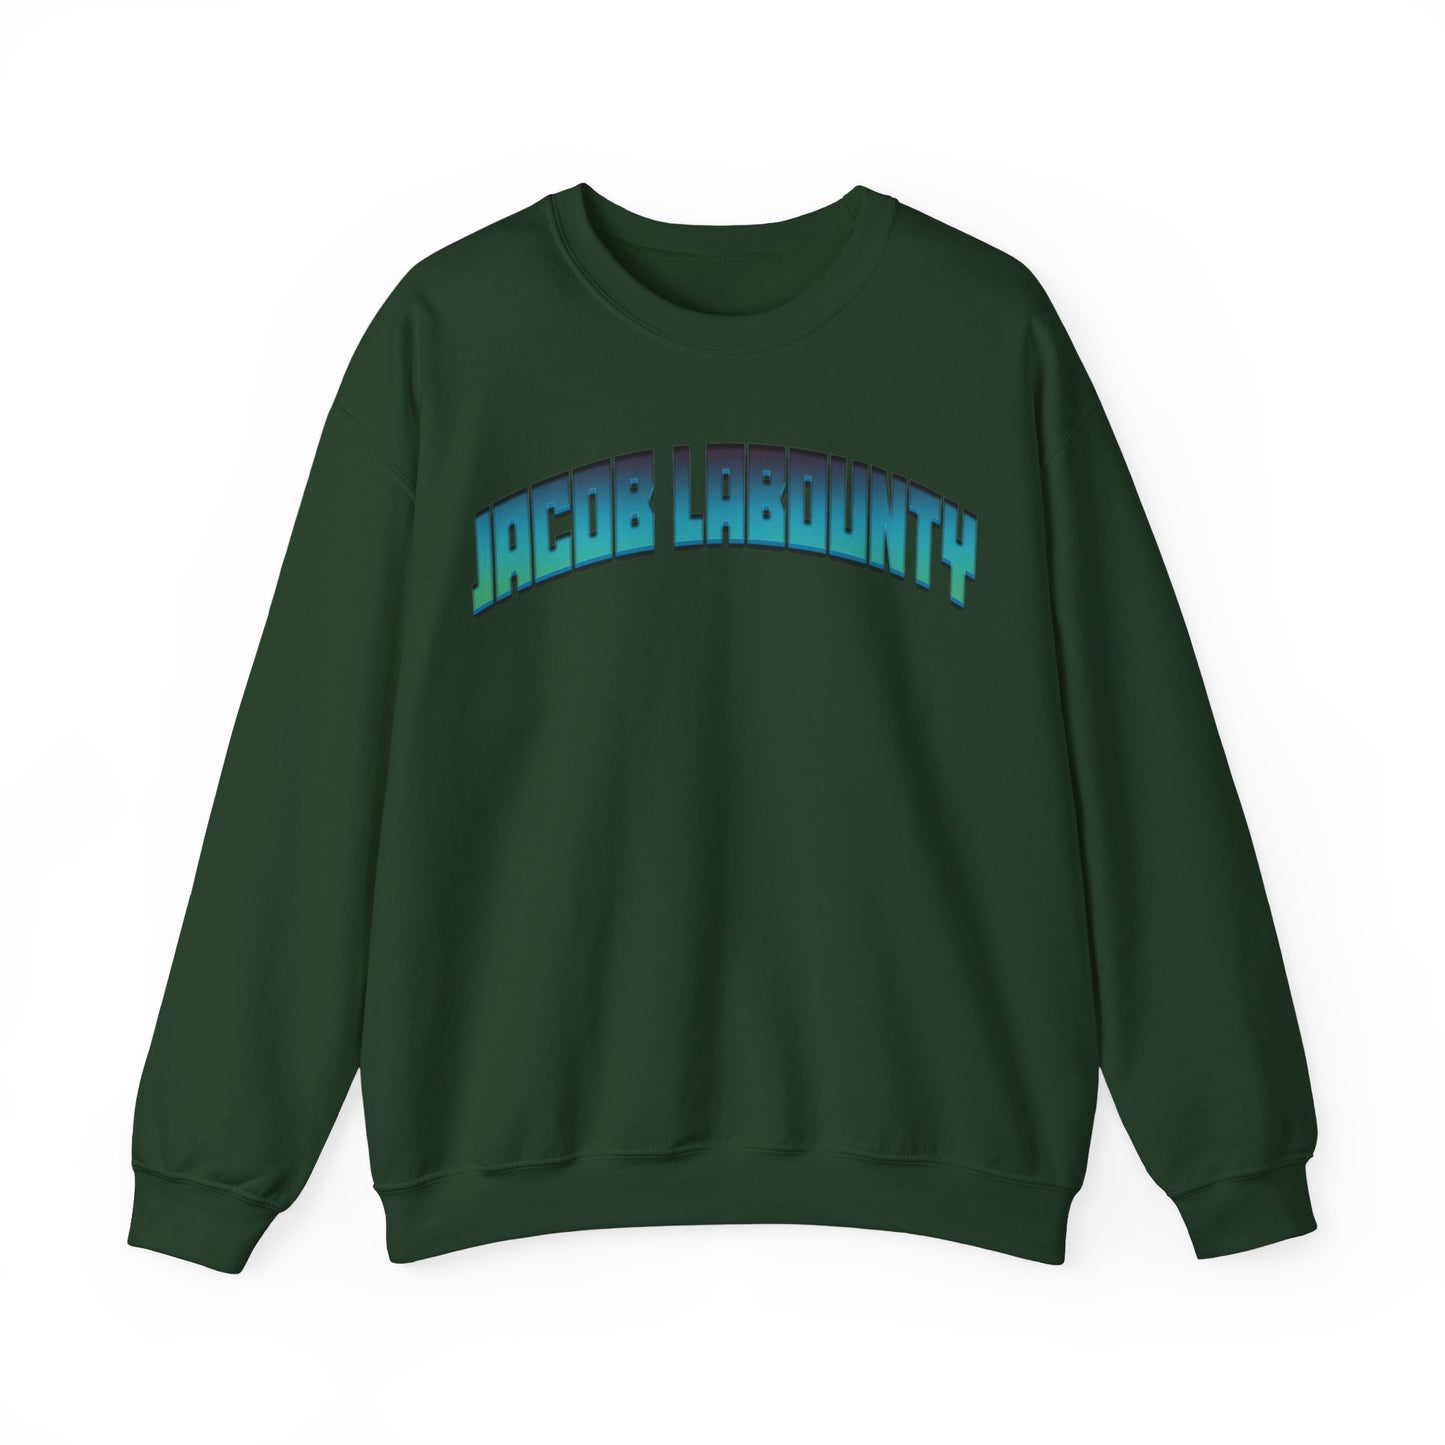 Jacob Labounty Crewneck Sweatshirt